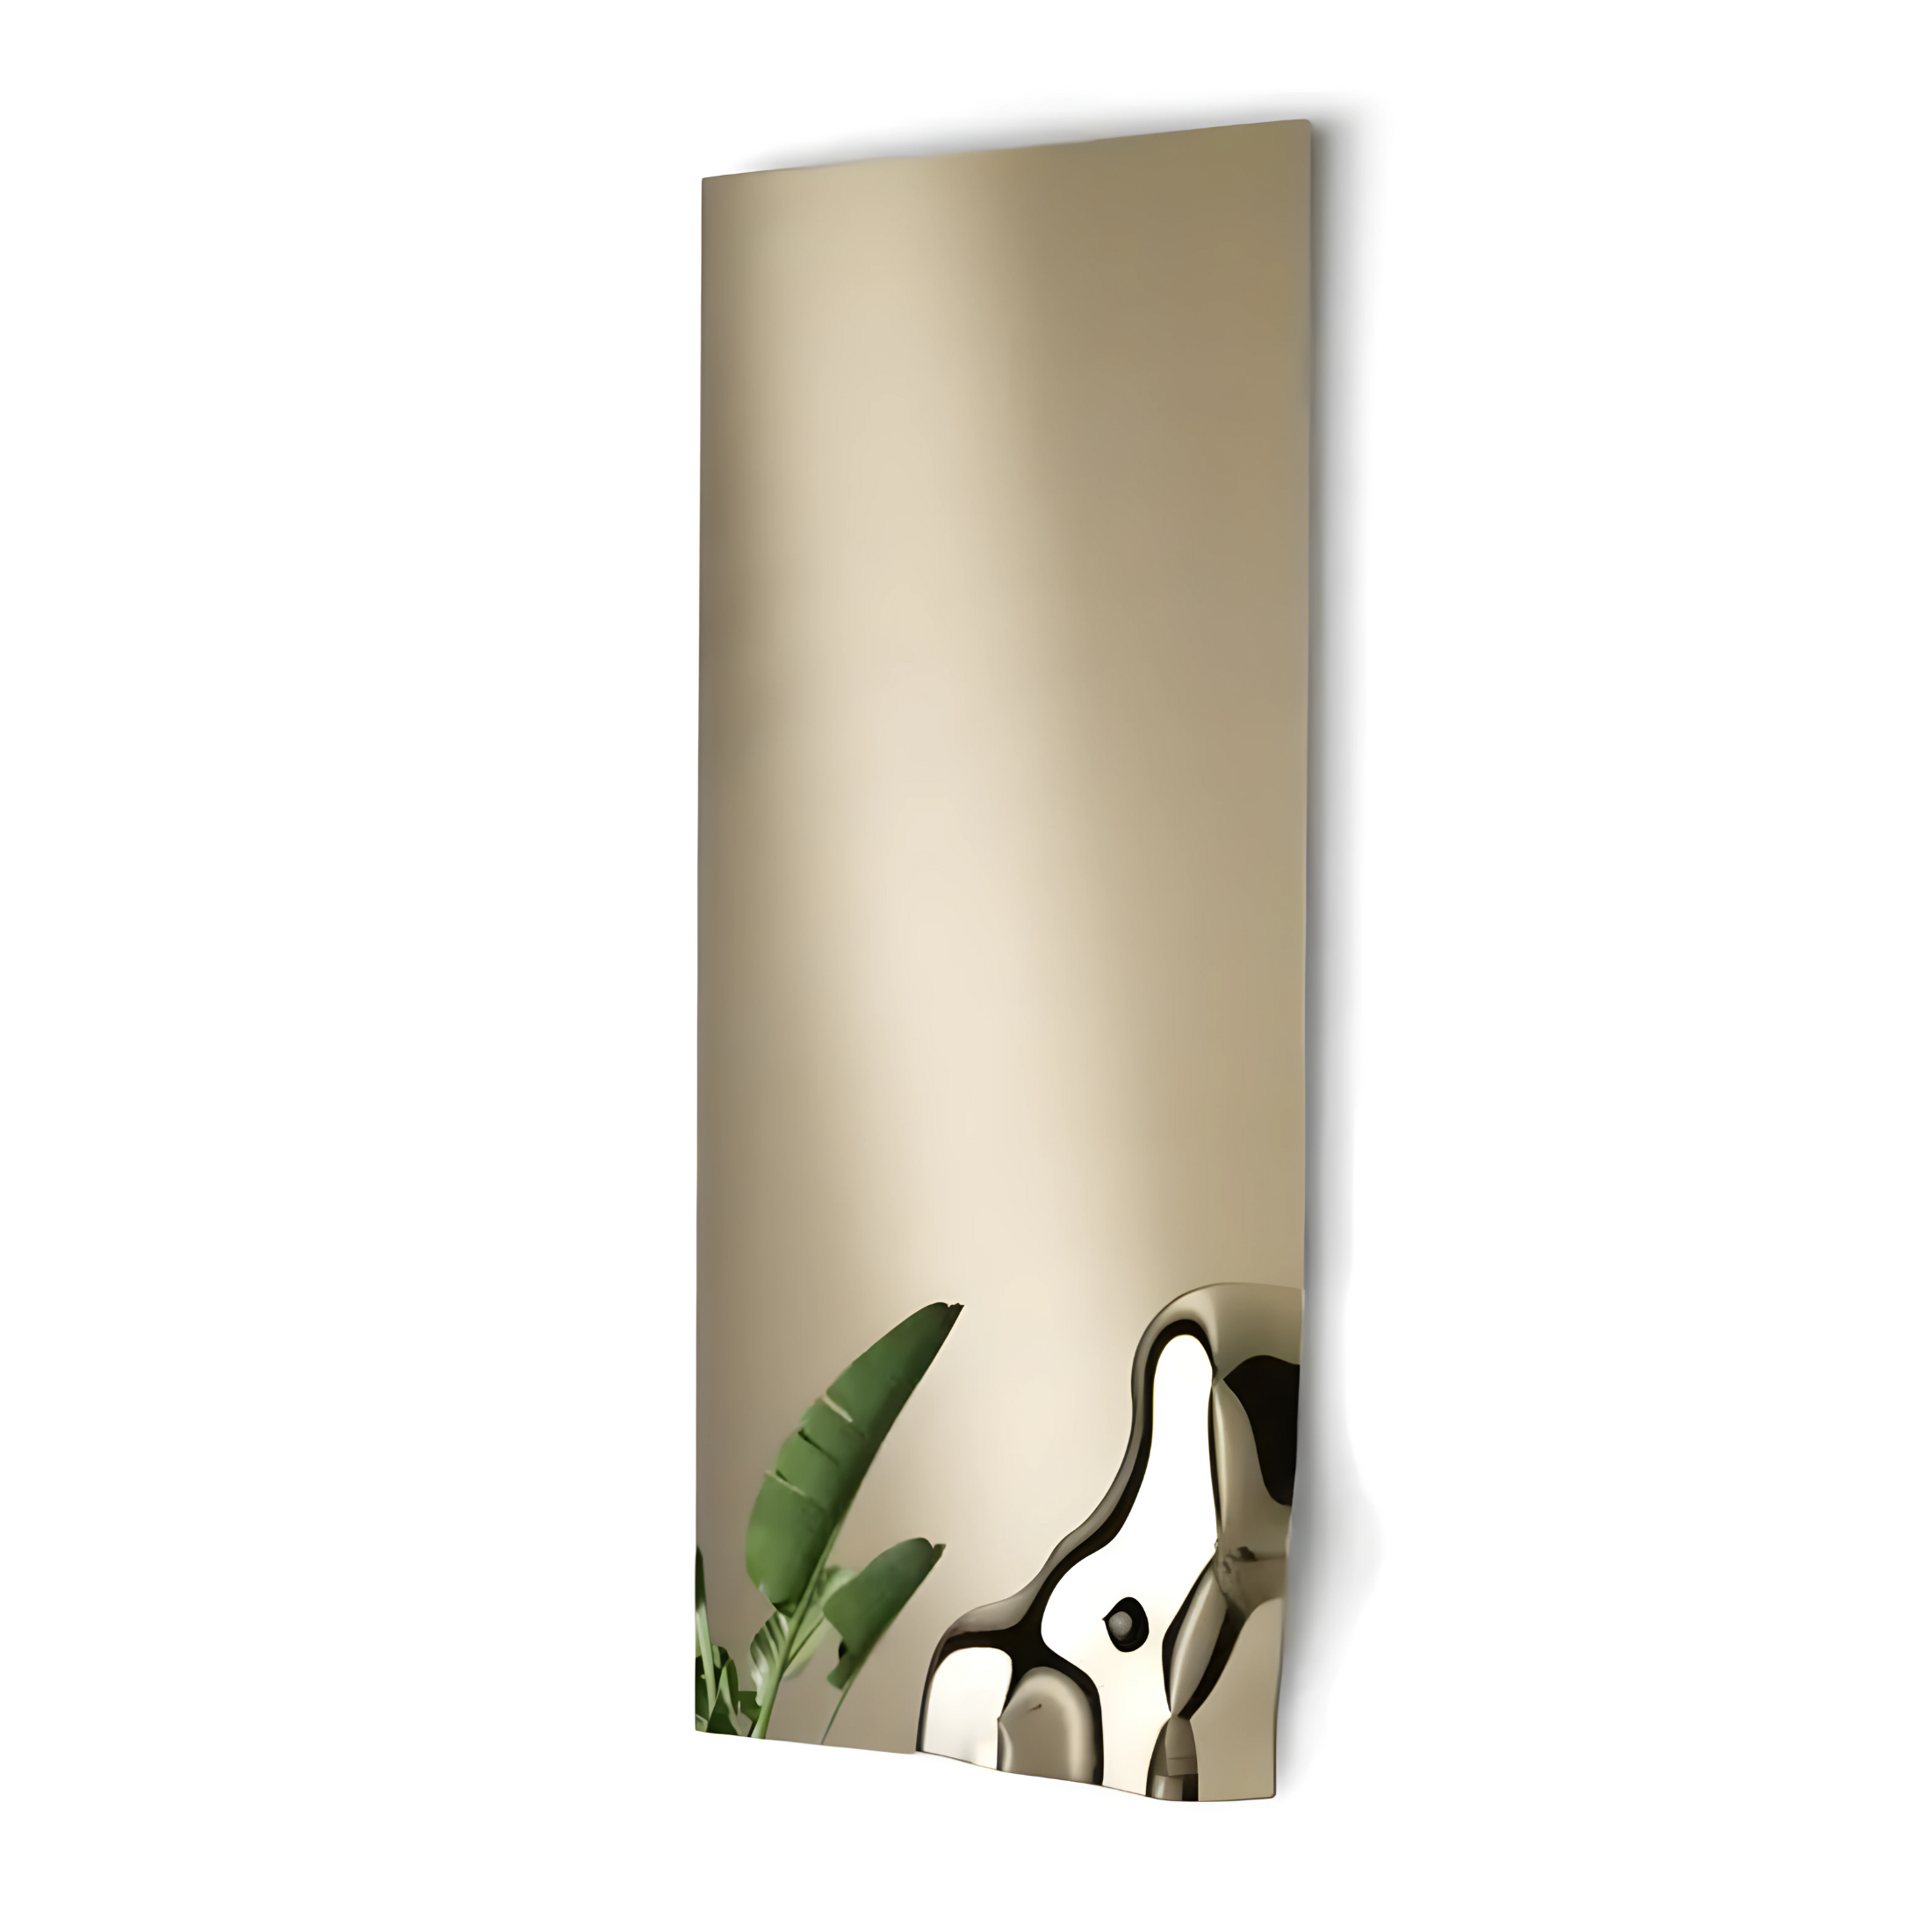 Miroir rectangulaire "Dolores" avec coin en verre fondu moderne cm 170x68 h